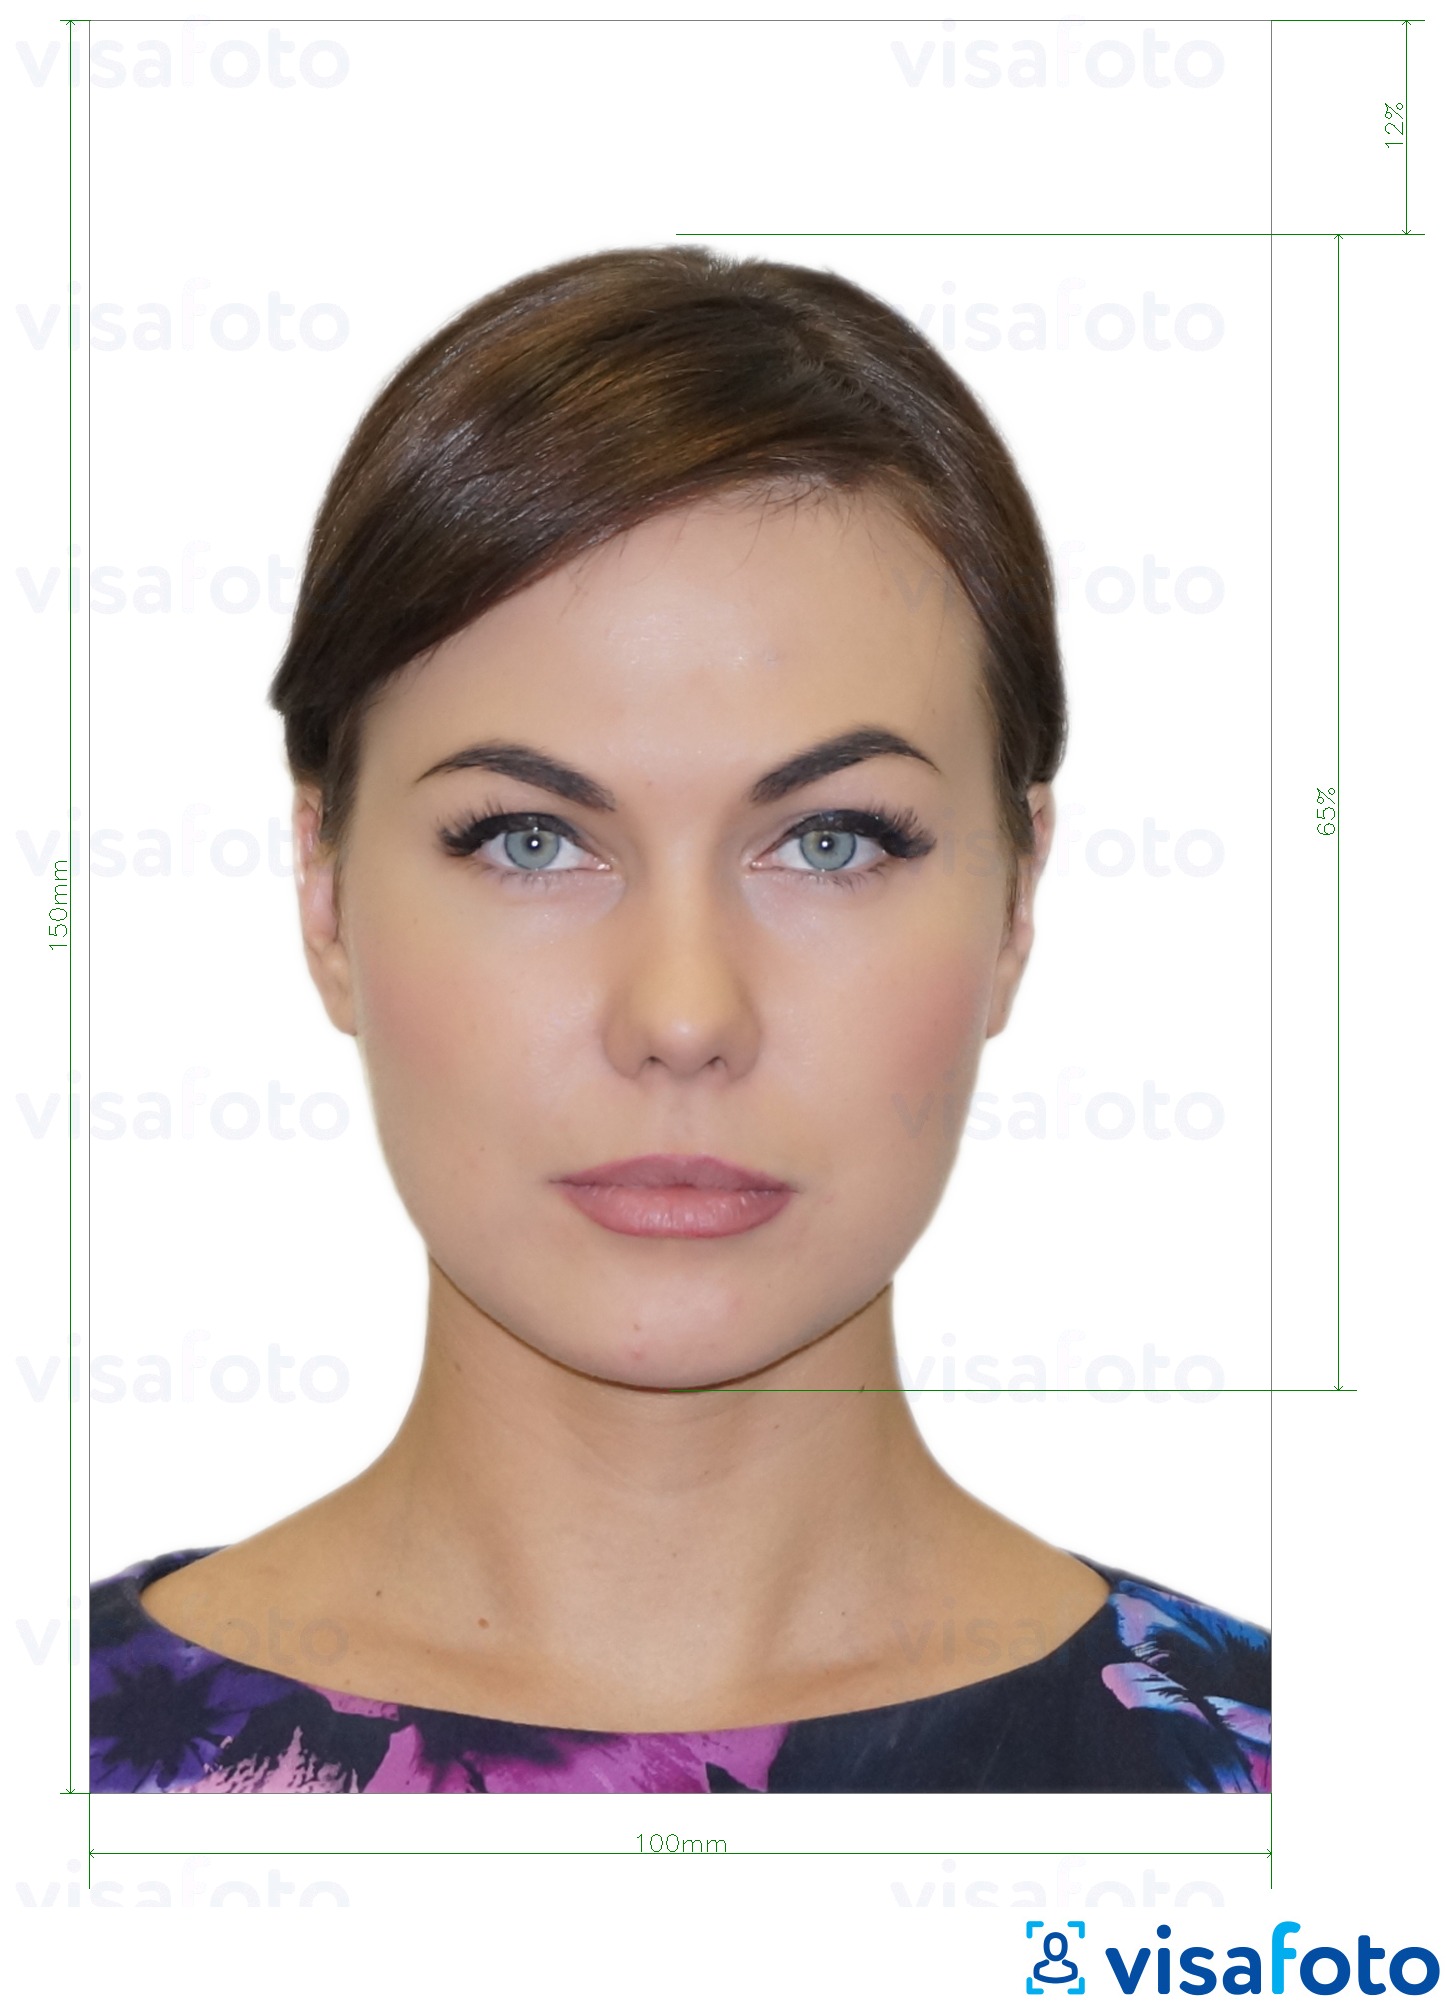 نمونه ی یک عکس برای شناسه کارت مولدووا (Buletin de identita) 10x15 سانتیمتر با مشخصات دقیق